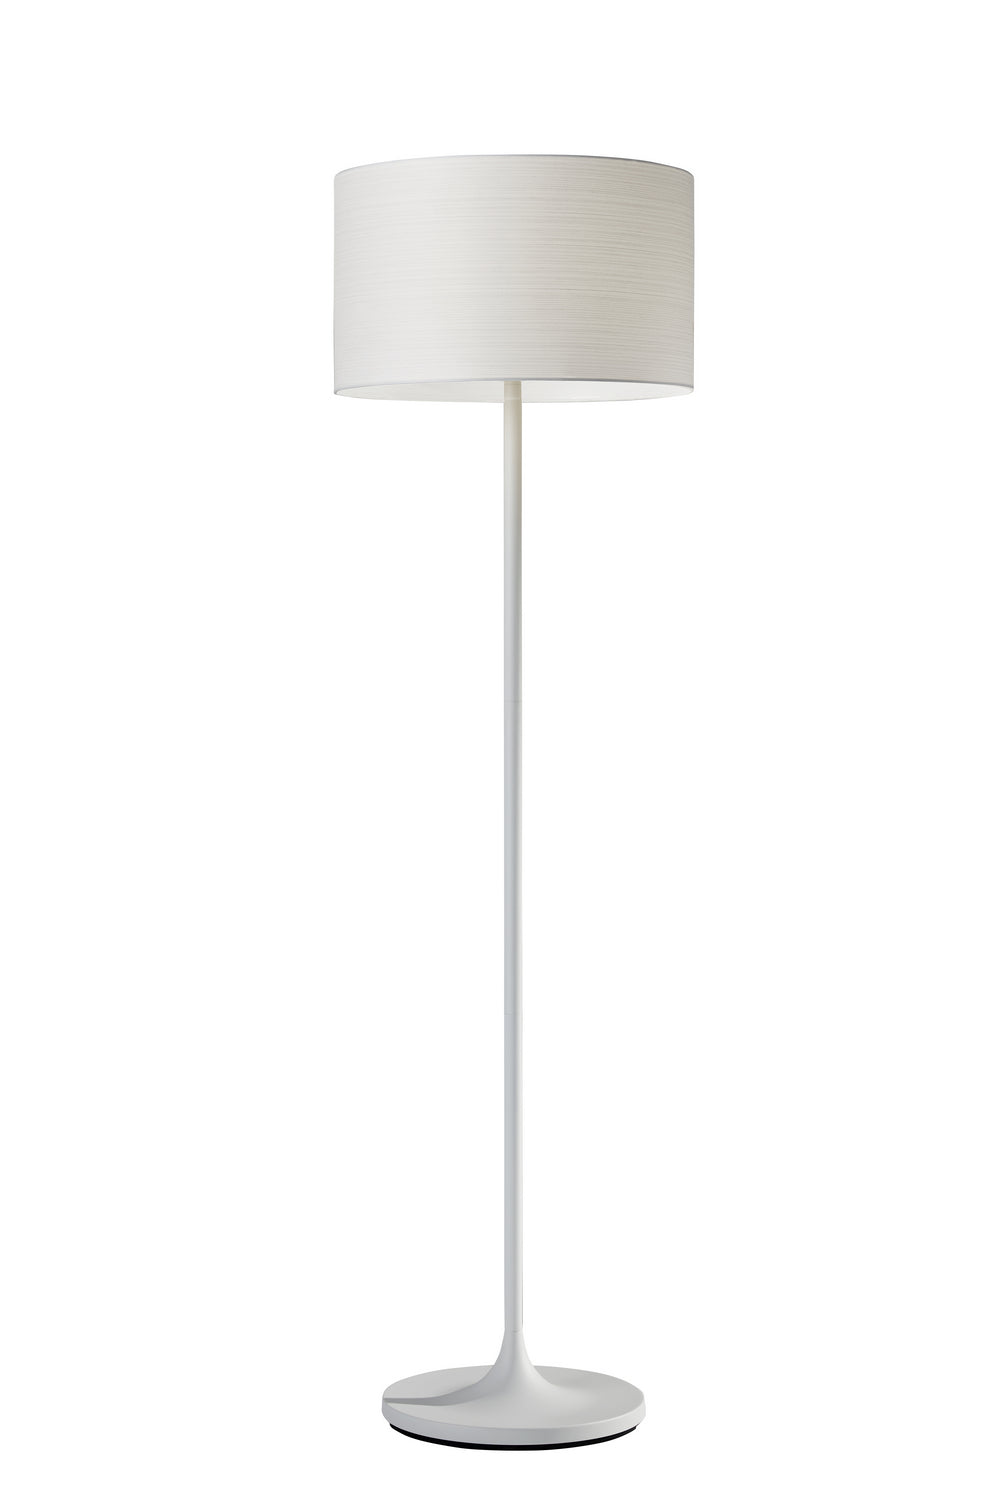 Adesso Home 6237-02  Oslo Lamp White Metal